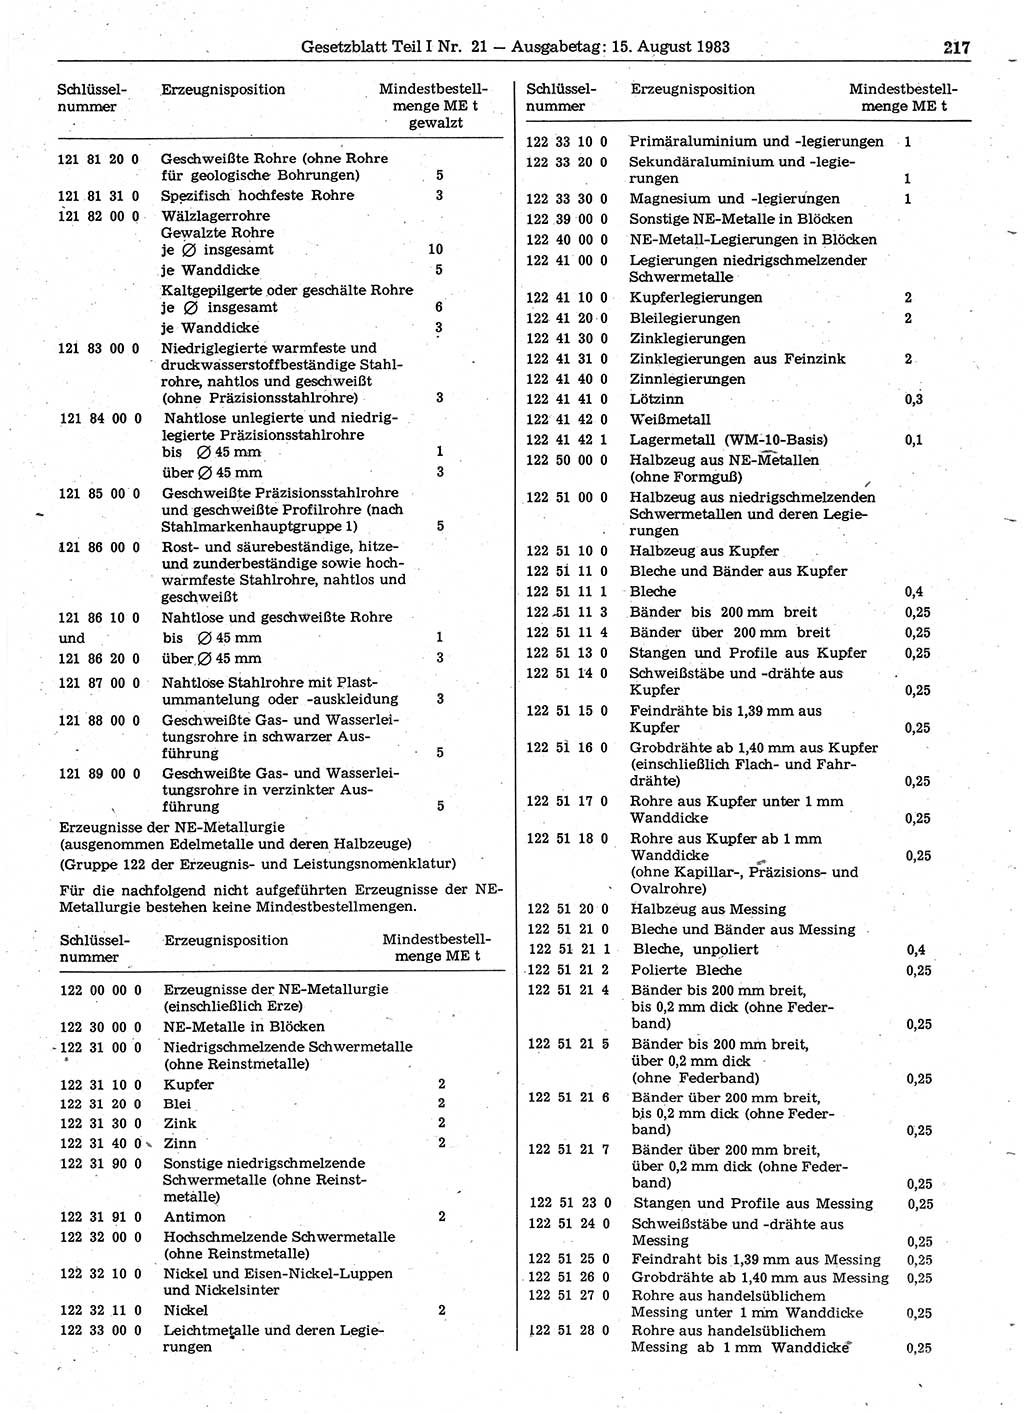 Gesetzblatt (GBl.) der Deutschen Demokratischen Republik (DDR) Teil Ⅰ 1983, Seite 217 (GBl. DDR Ⅰ 1983, S. 217)